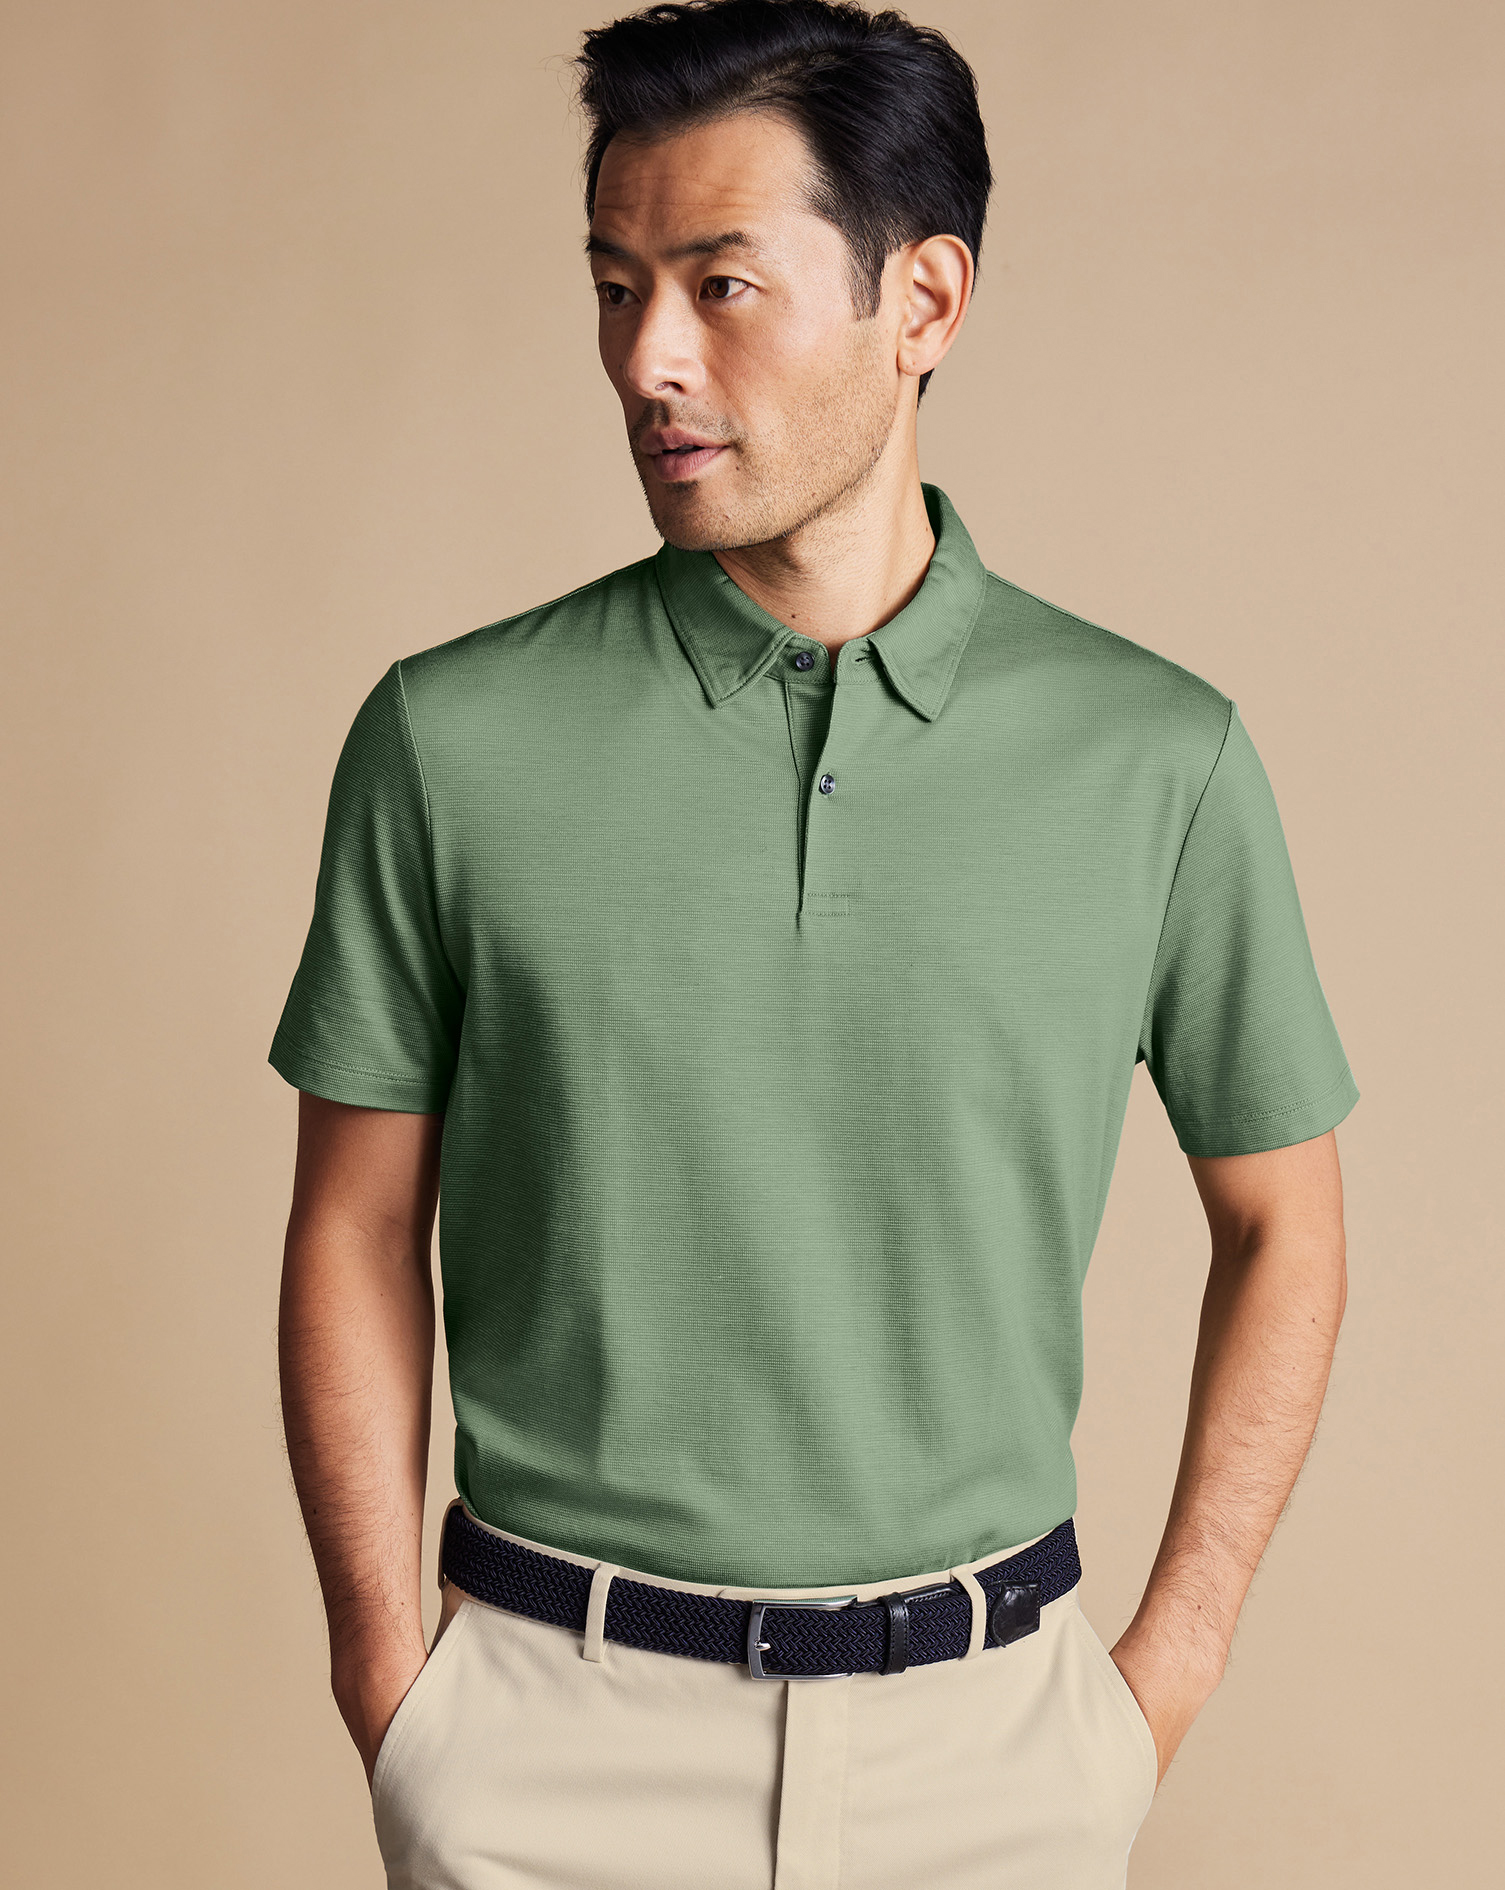 Men's Charles Tyrwhitt Cool Textured Polo Shirt - Light Green Size Medium Cotton
